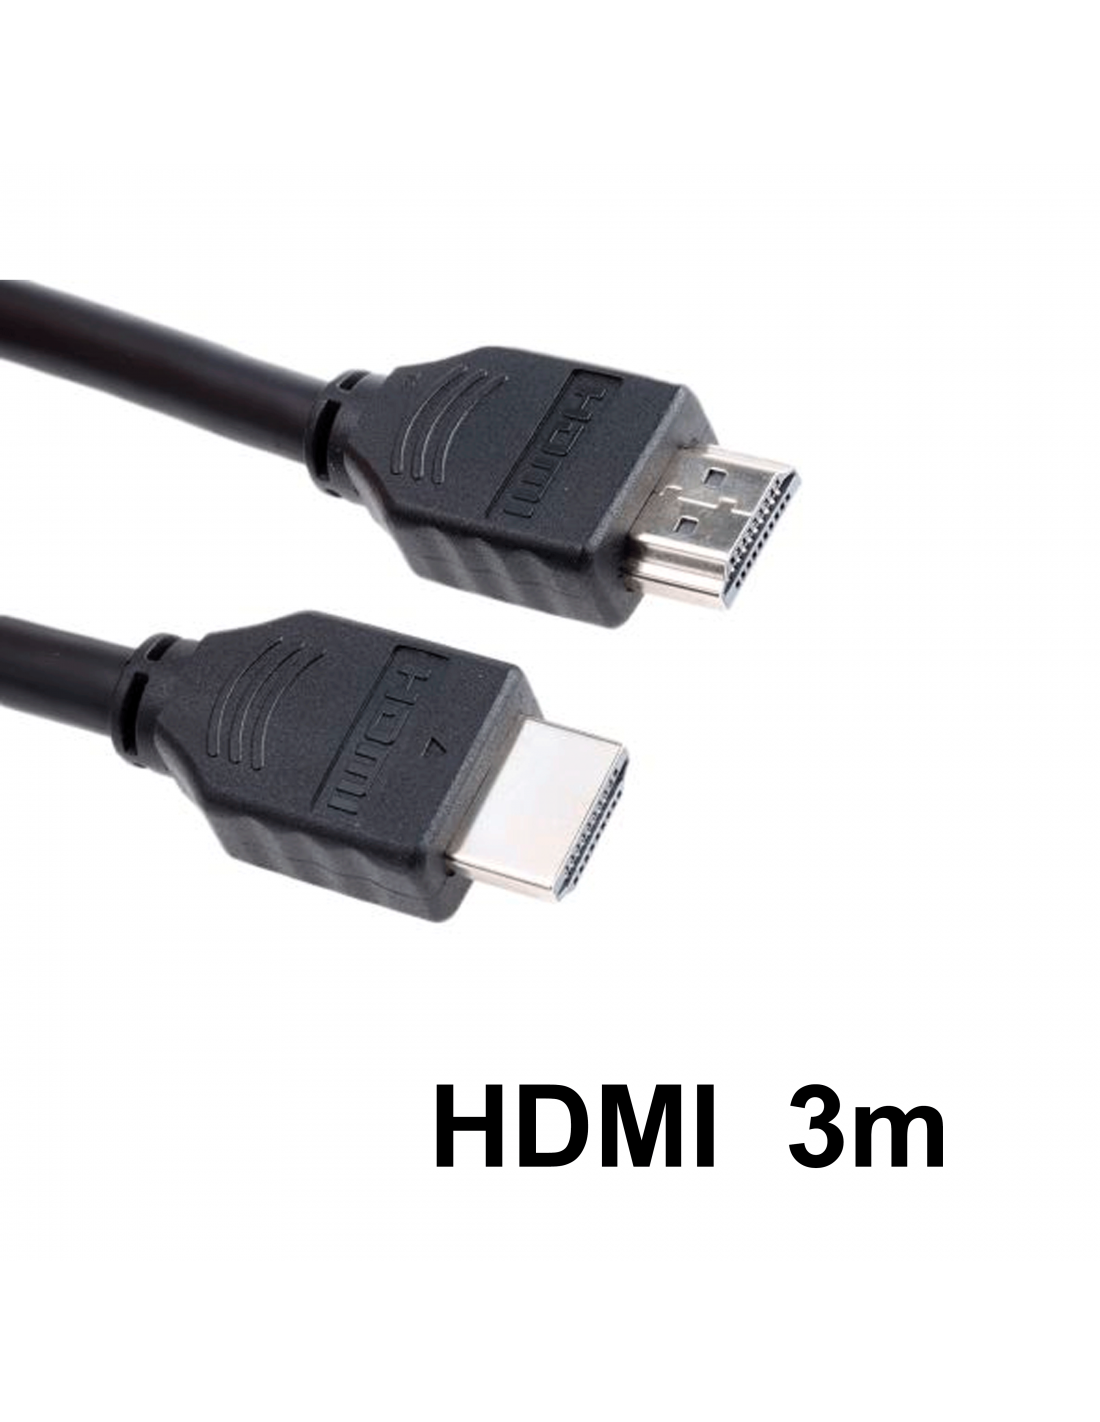 CABLE HDMI 3M M/M 4K V 2,0 | Mayorista La Cibertienda